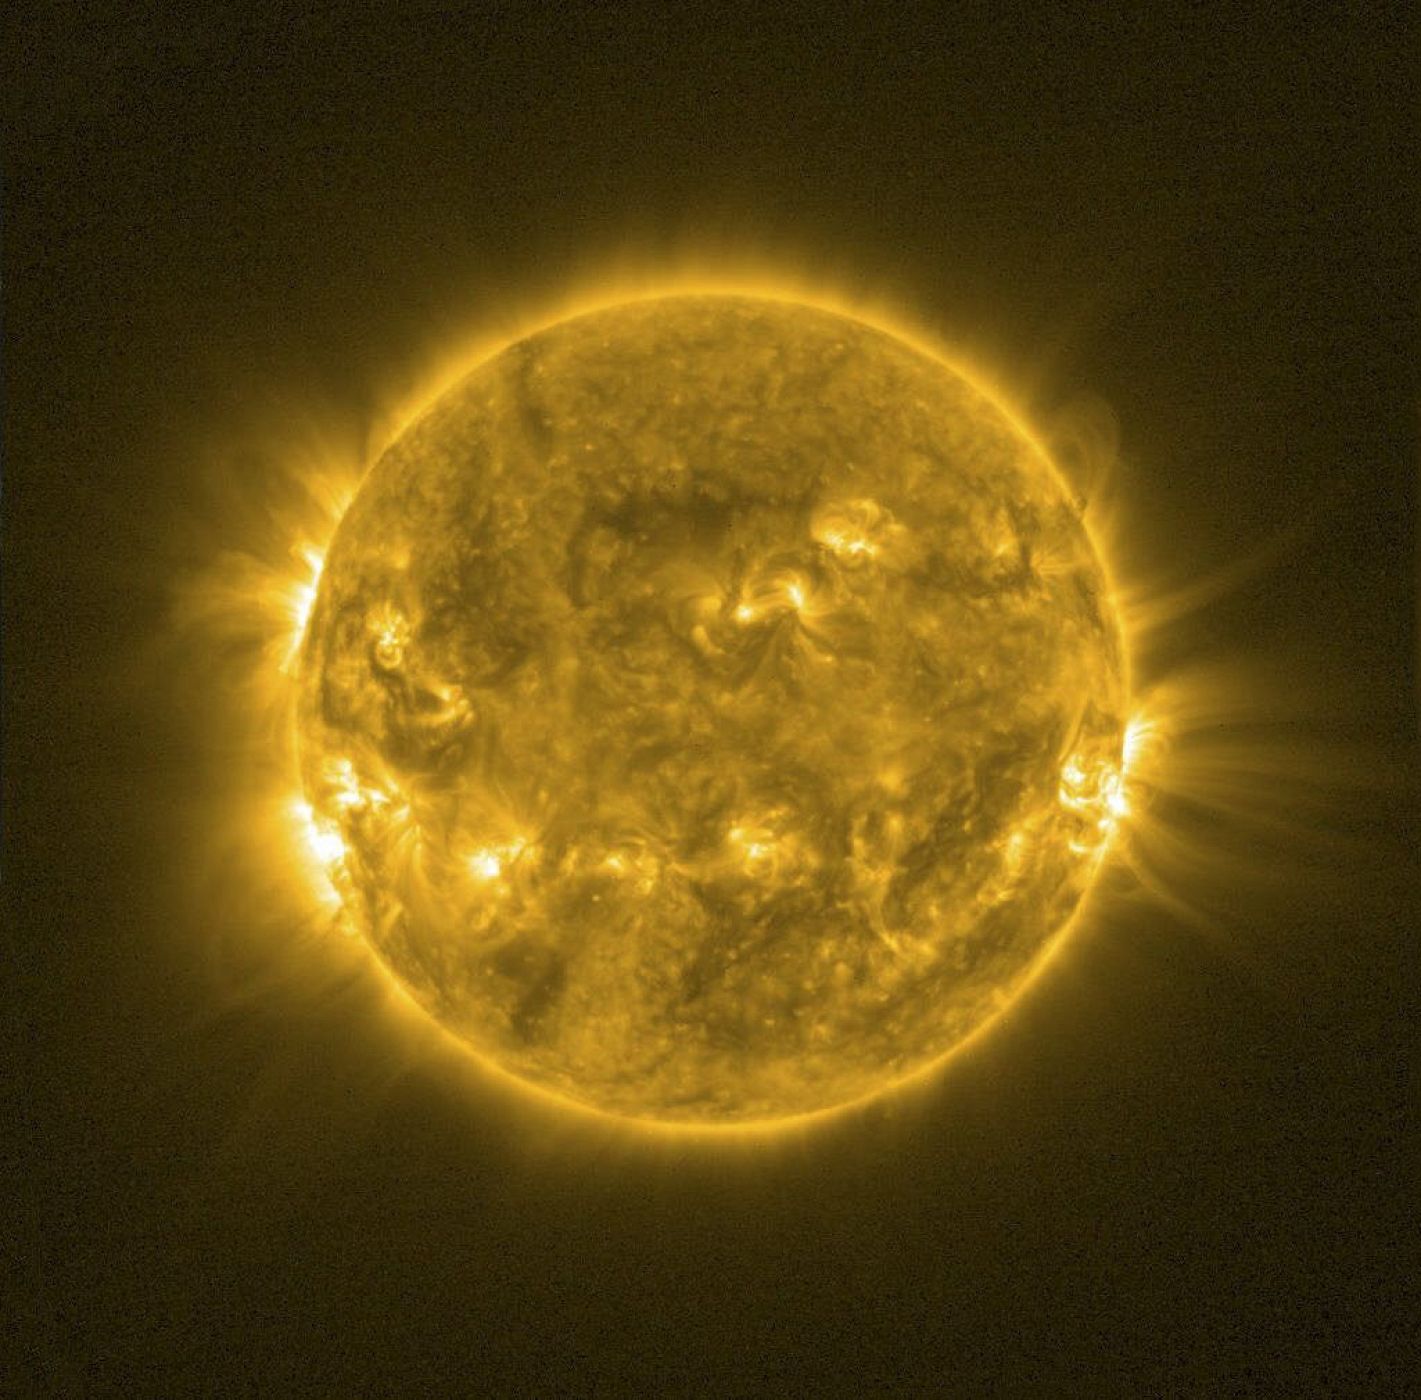 Fotografía facilitada por la Agencia Espacial Europea (ESA), de la corona solar, una de las más recientes imágenes captadas por el satélite Proba-2.